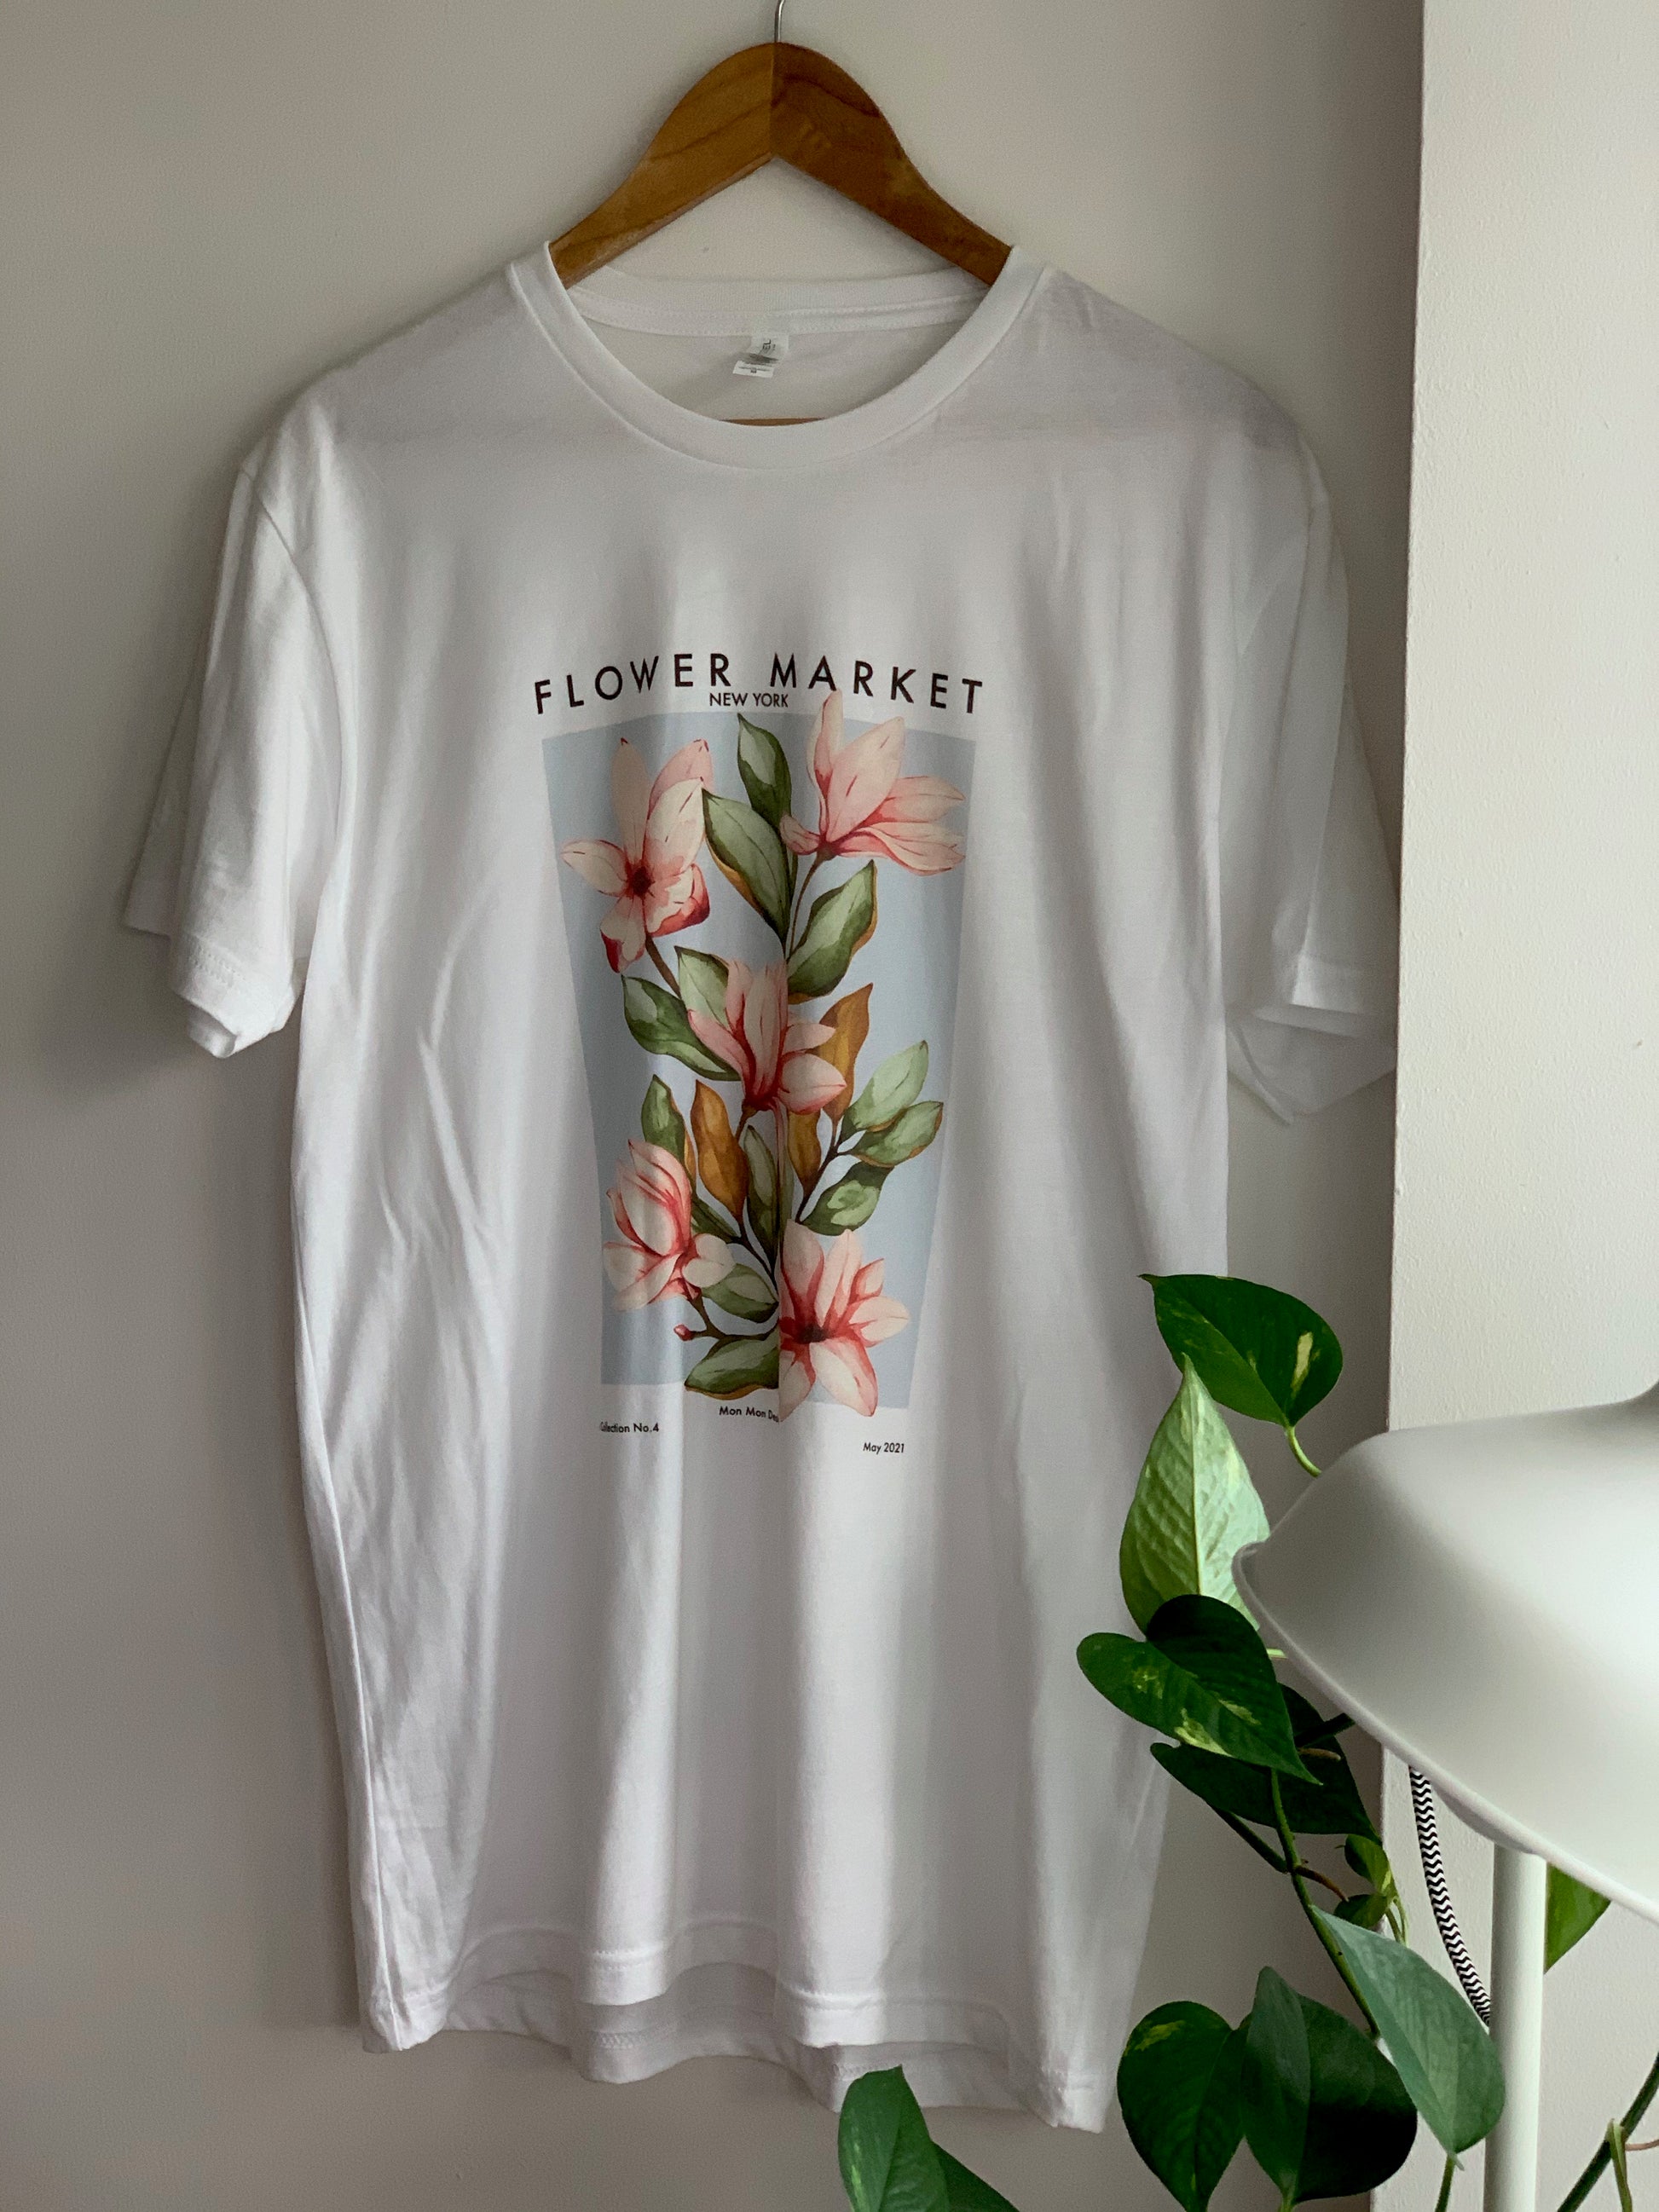 flower t shirt design